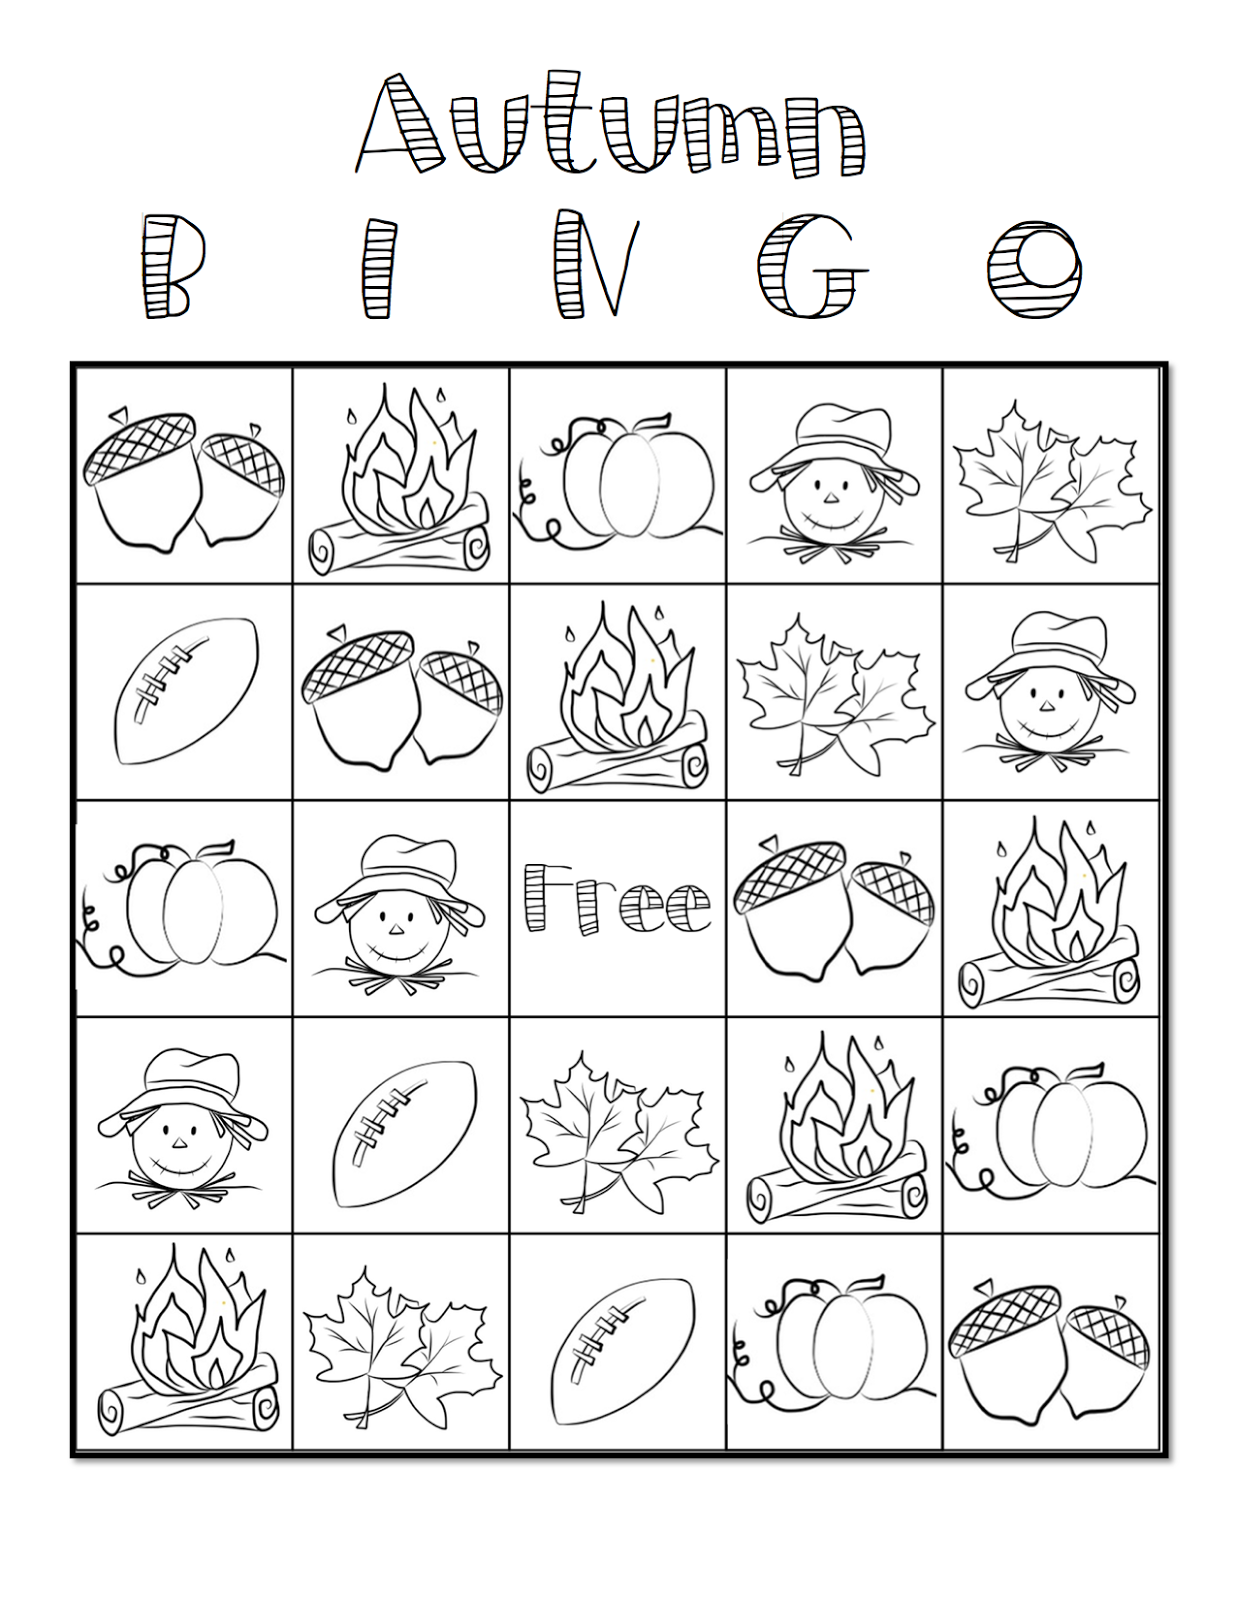 autumn-bingo